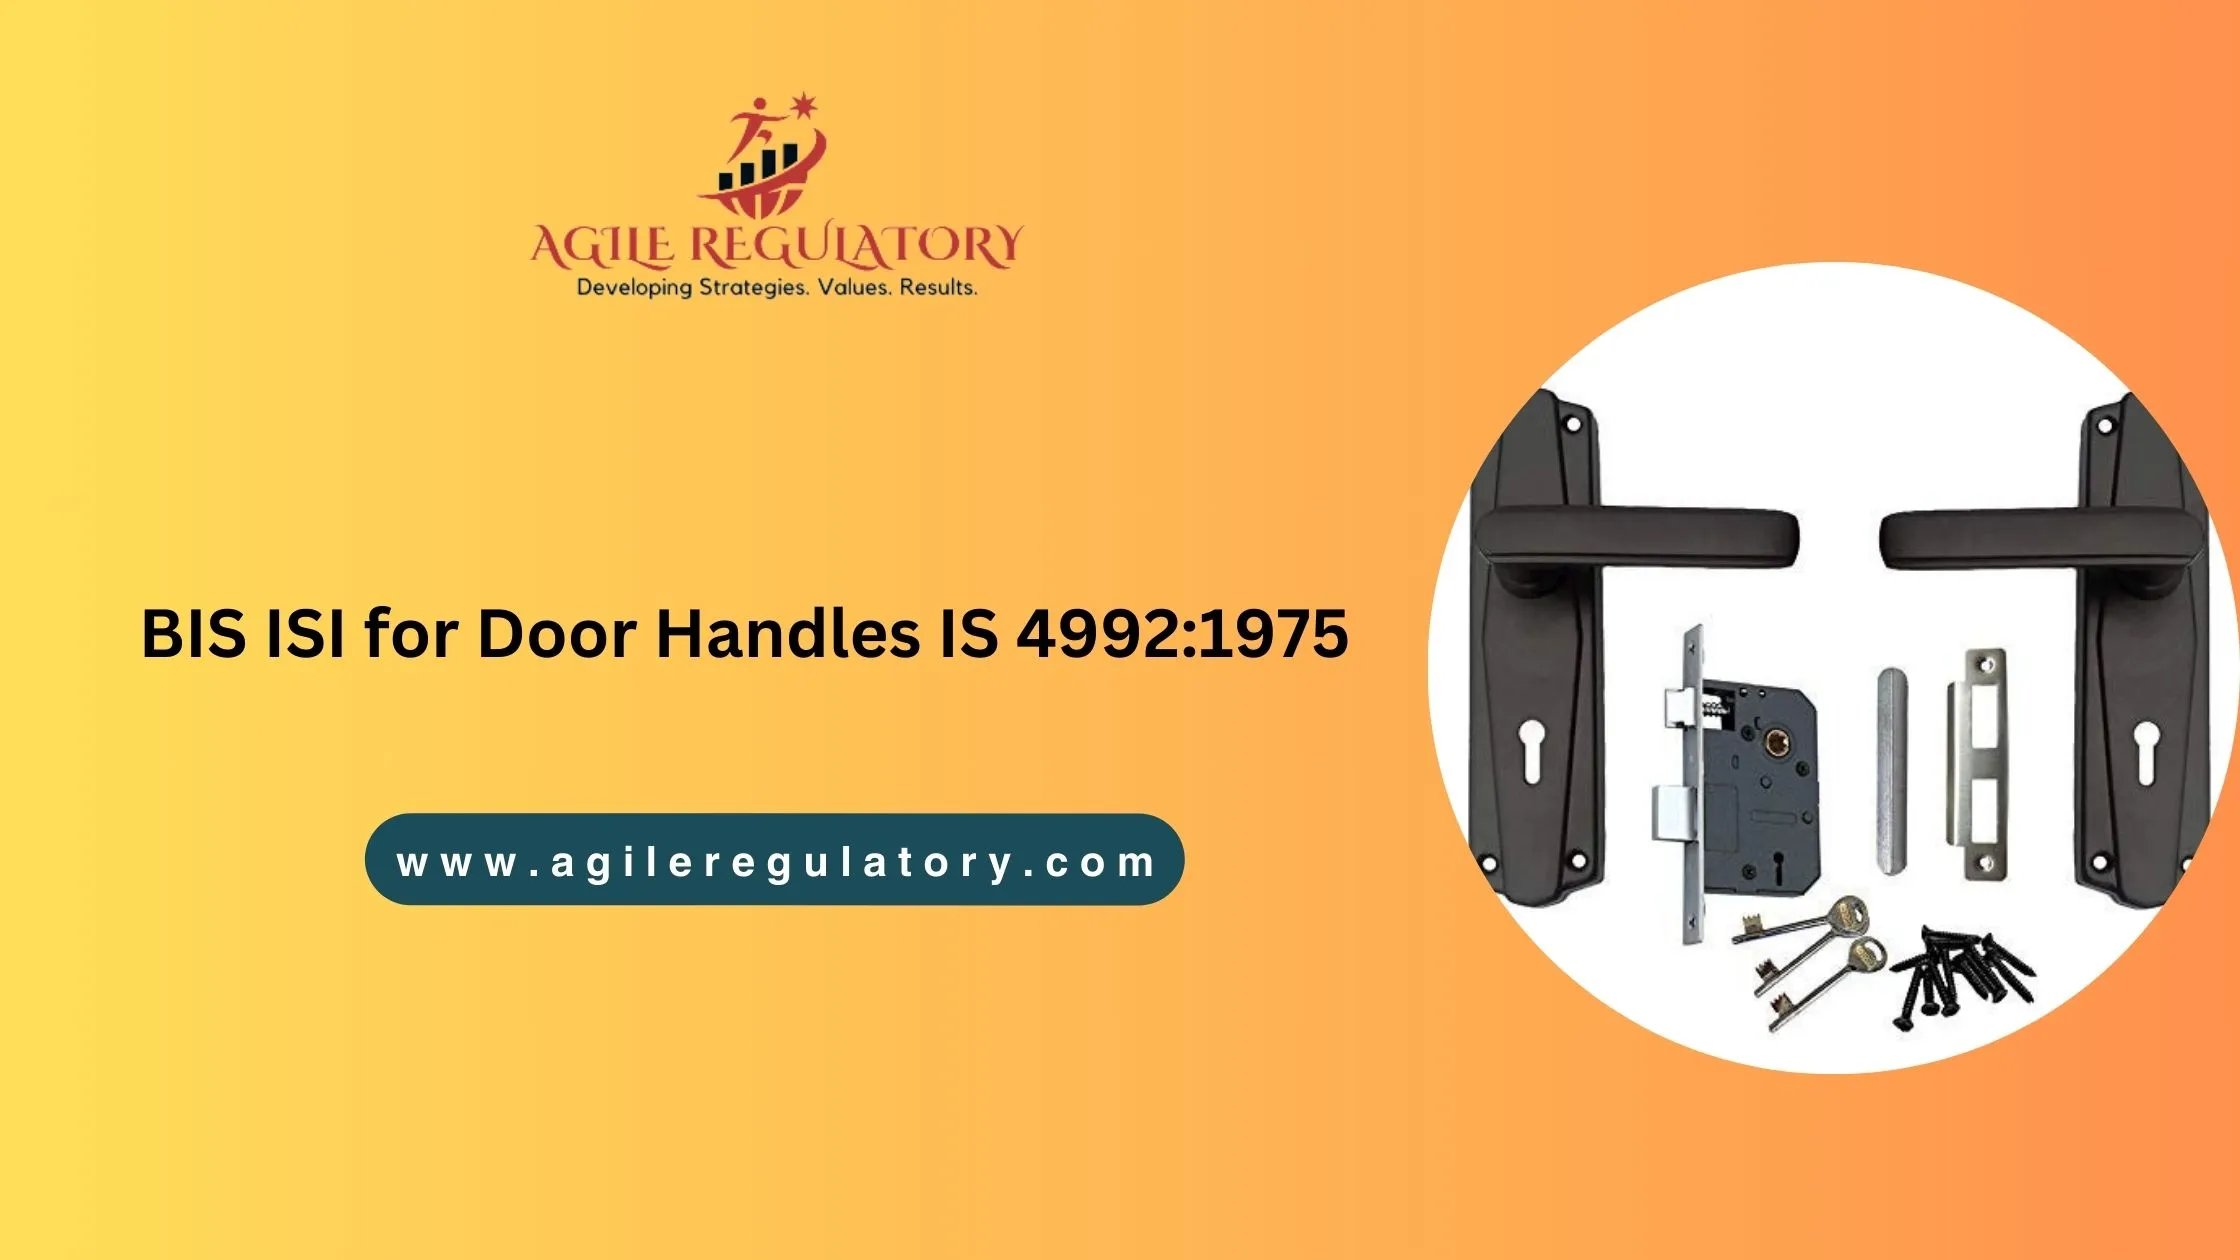 BIS ISI for Door Handles IS 4992:1975